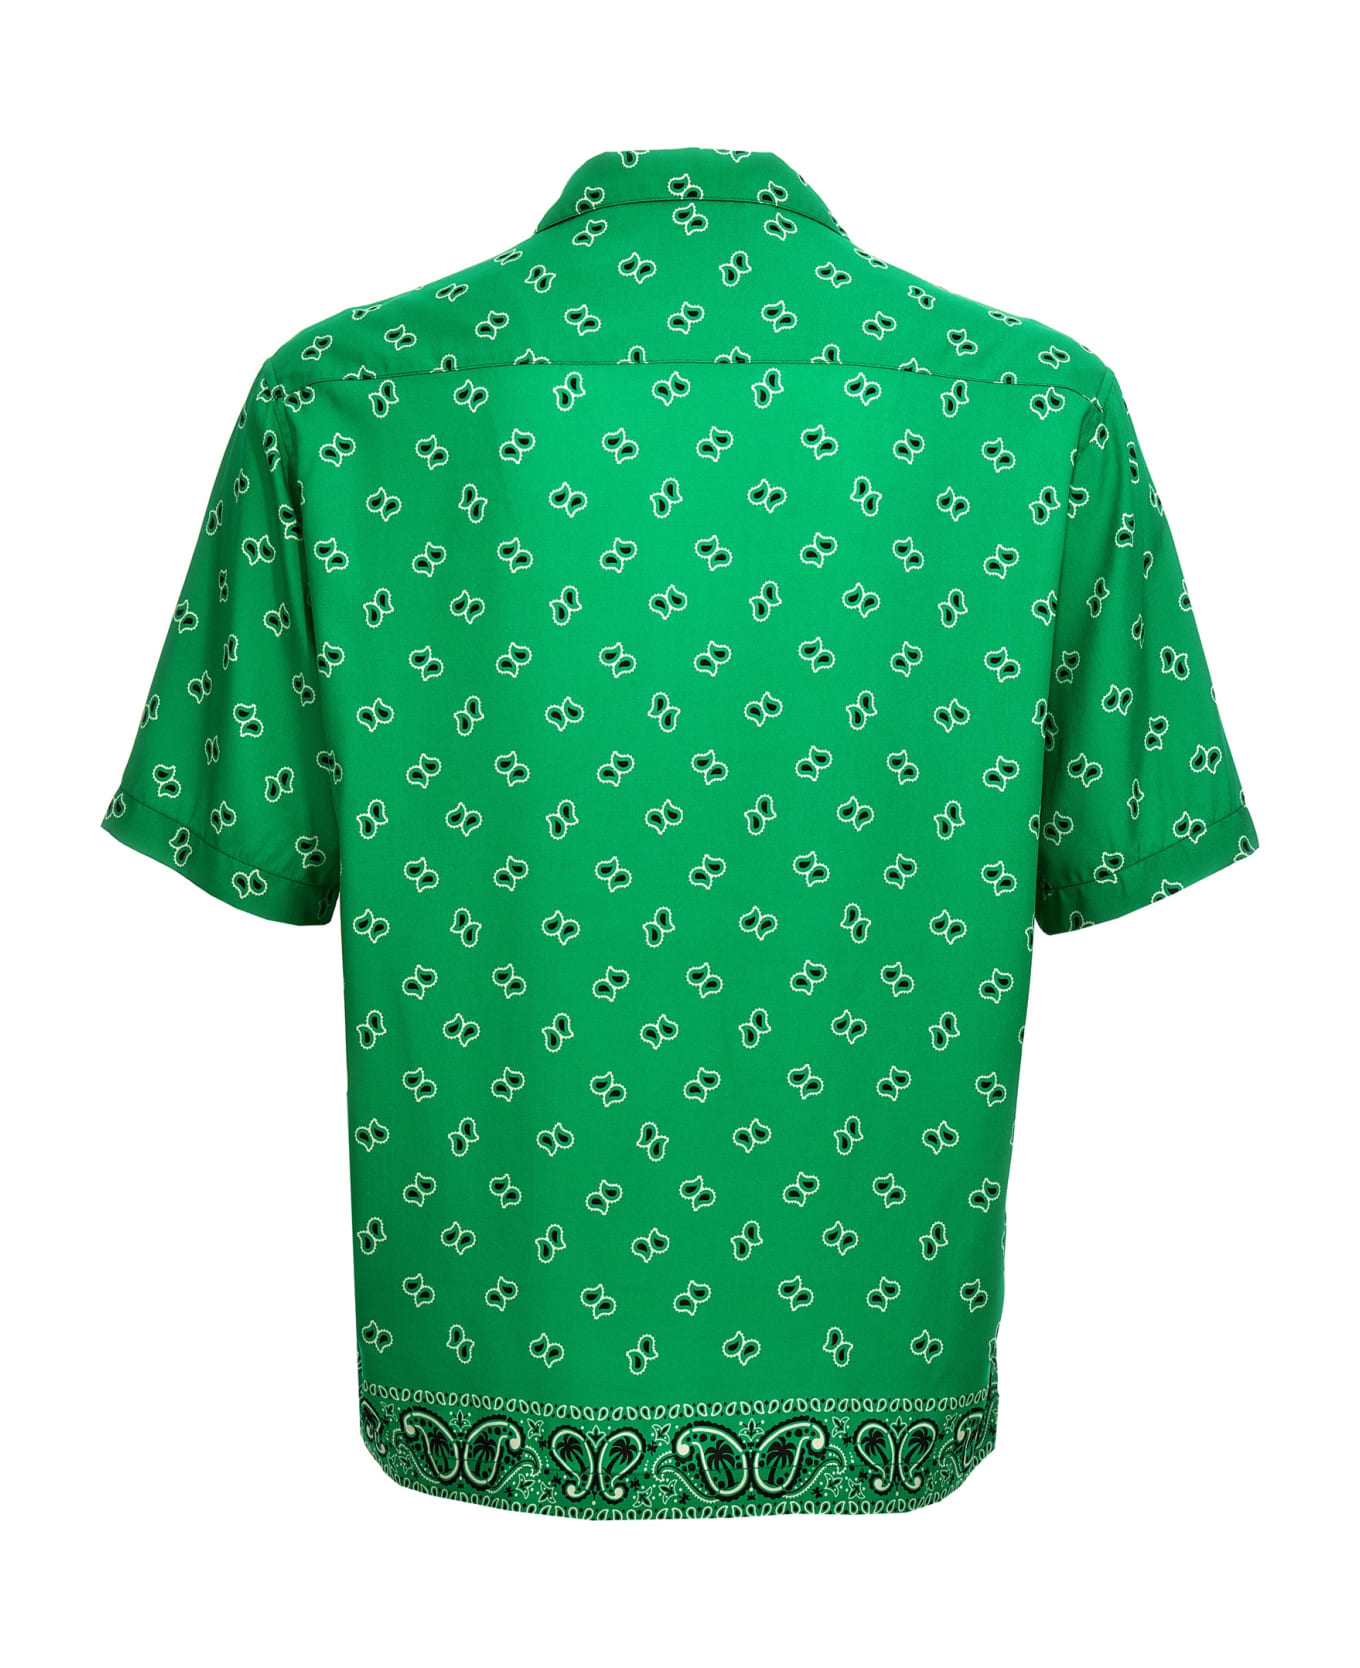 Palm Angels Paisley Printed Short-sleeved Shirt - Green green